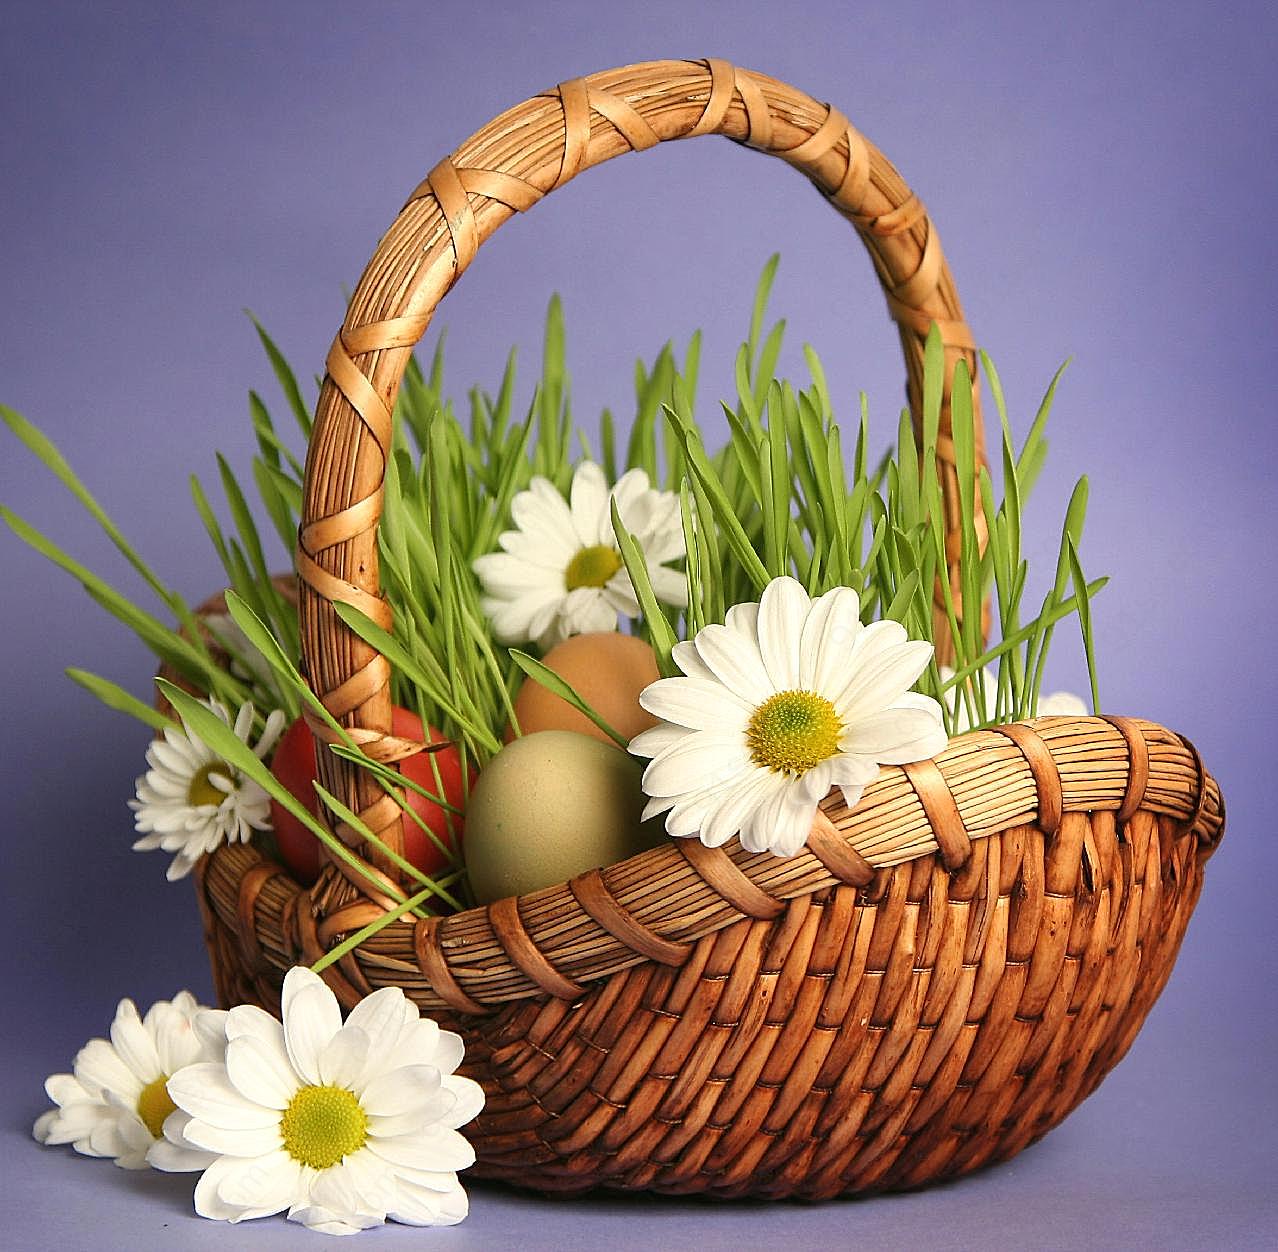 复活节篮子彩蛋鲜花图片节日图片大全